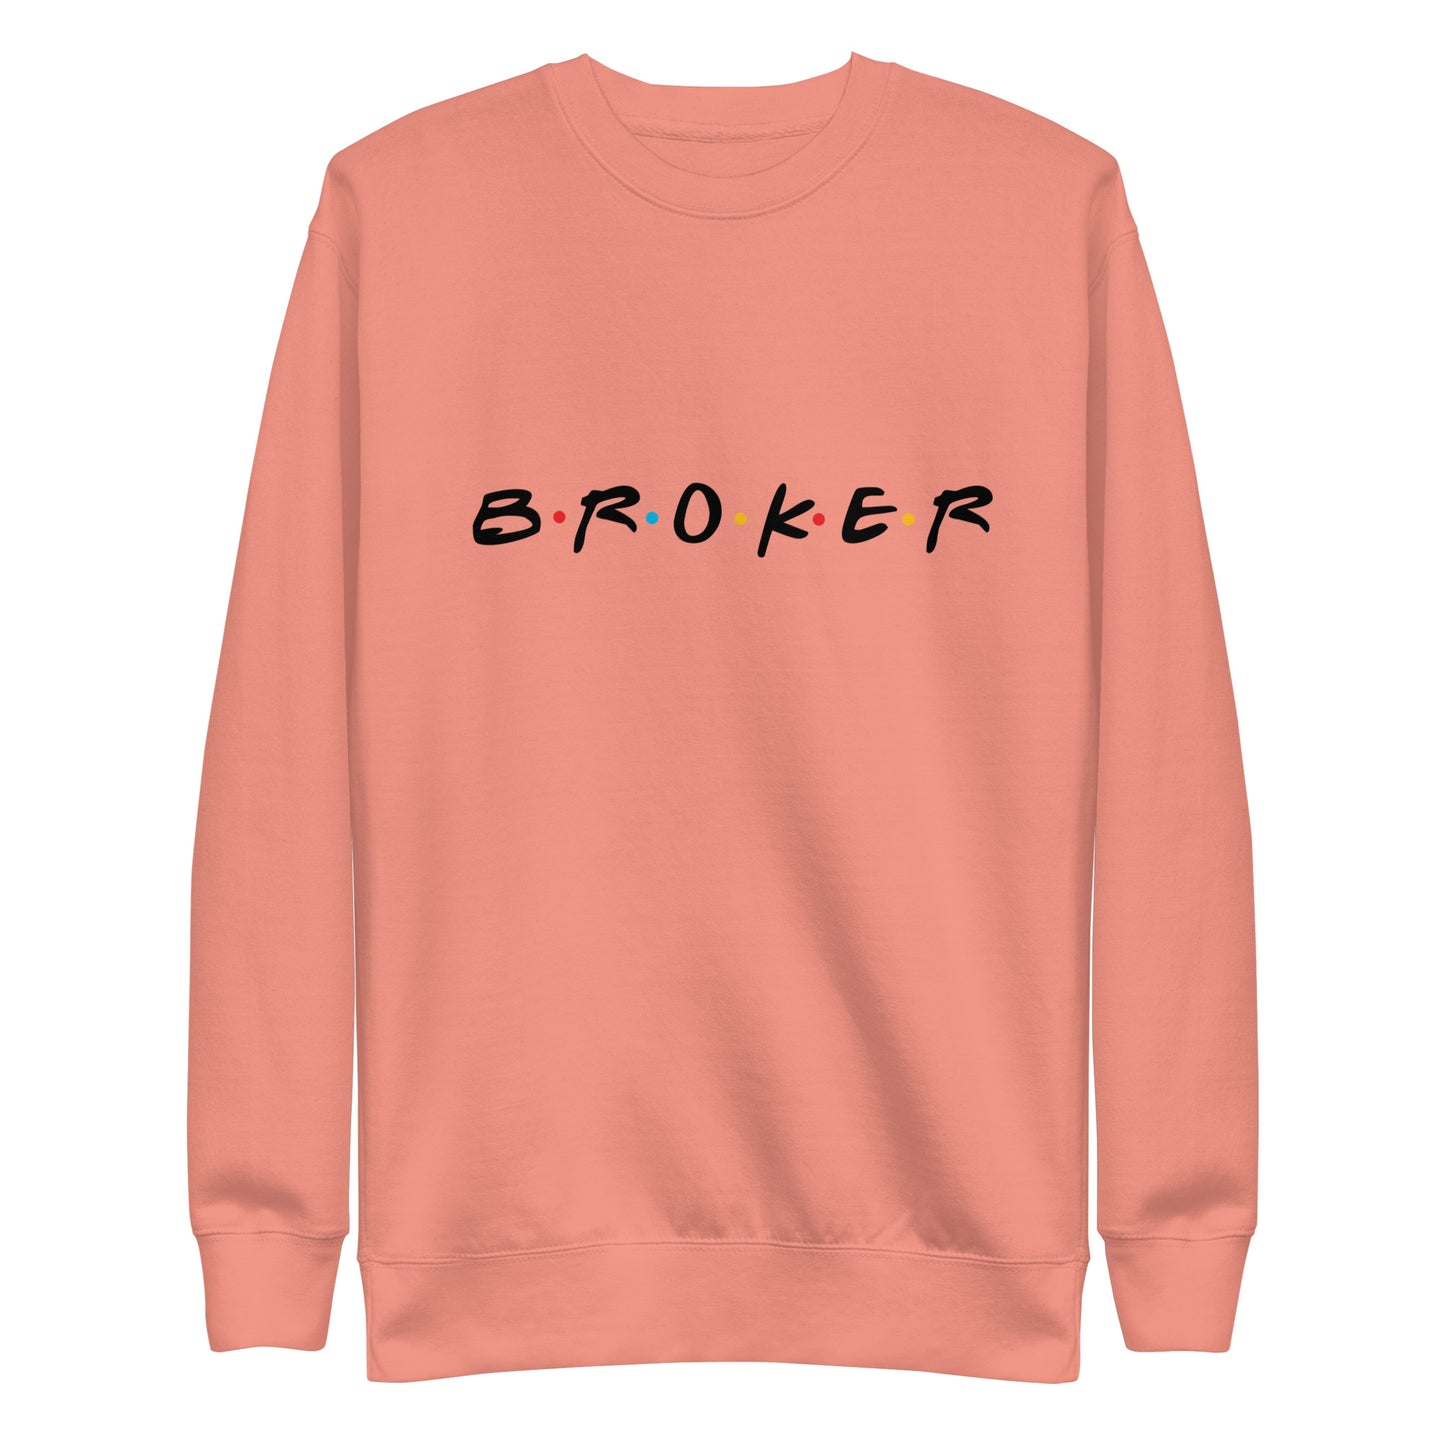 BROKER Crew Neck Sweatshirt